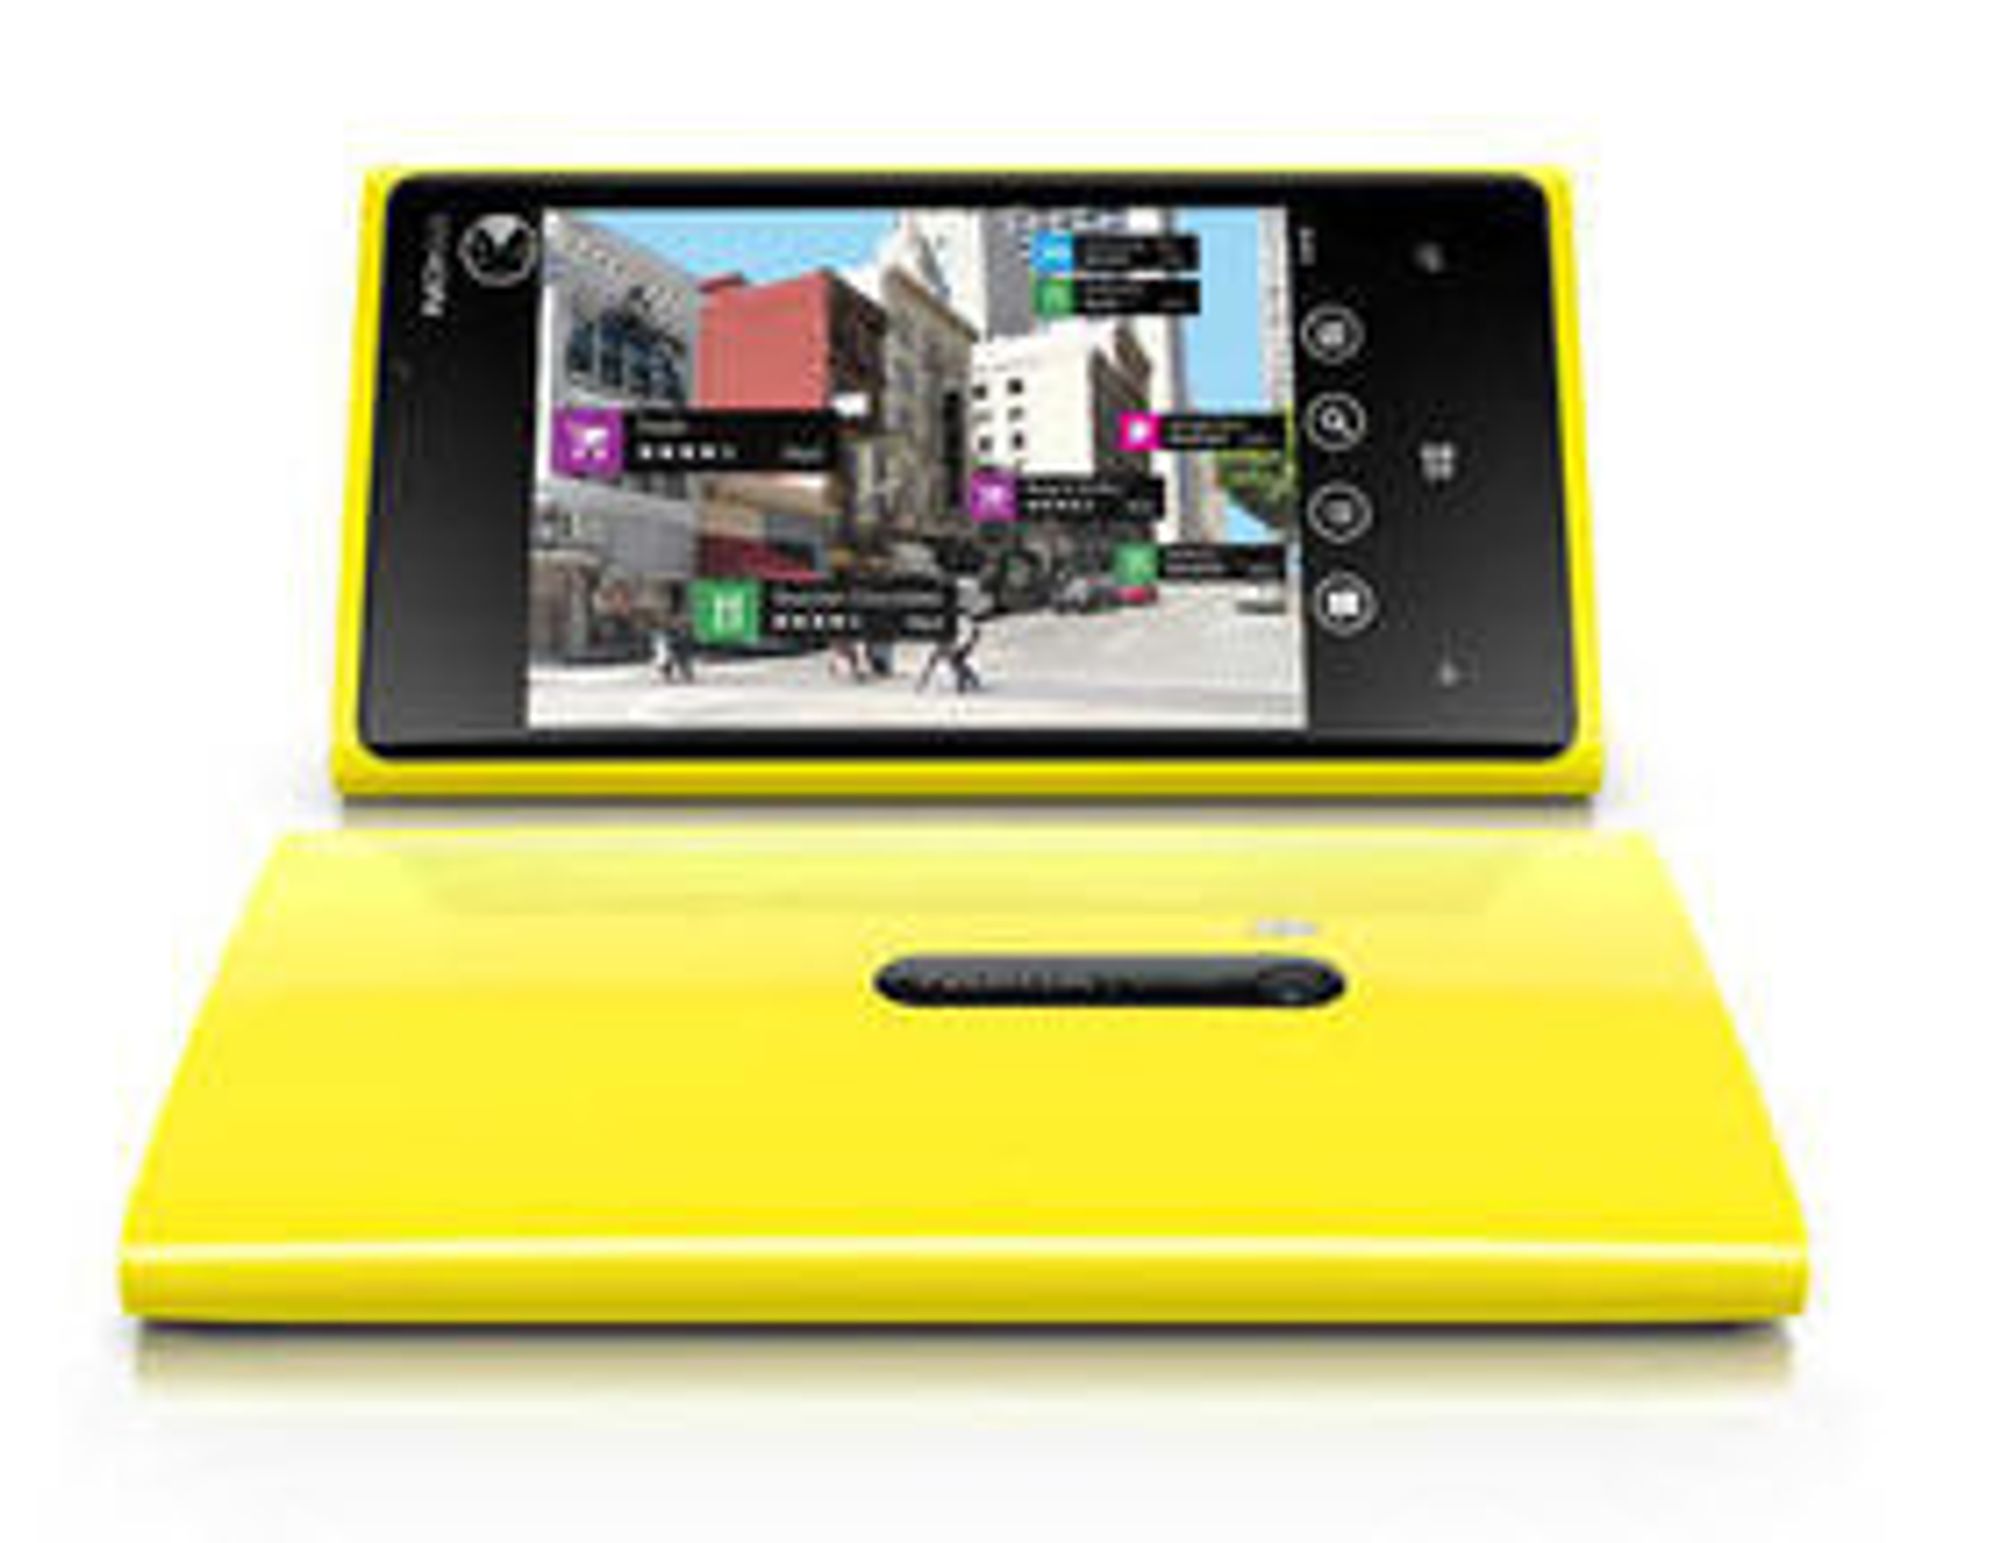 Lumia 920, den nye toppmodellen til Nokia, har også fått avansert "utvidet virkelighet" funksjonalitet.